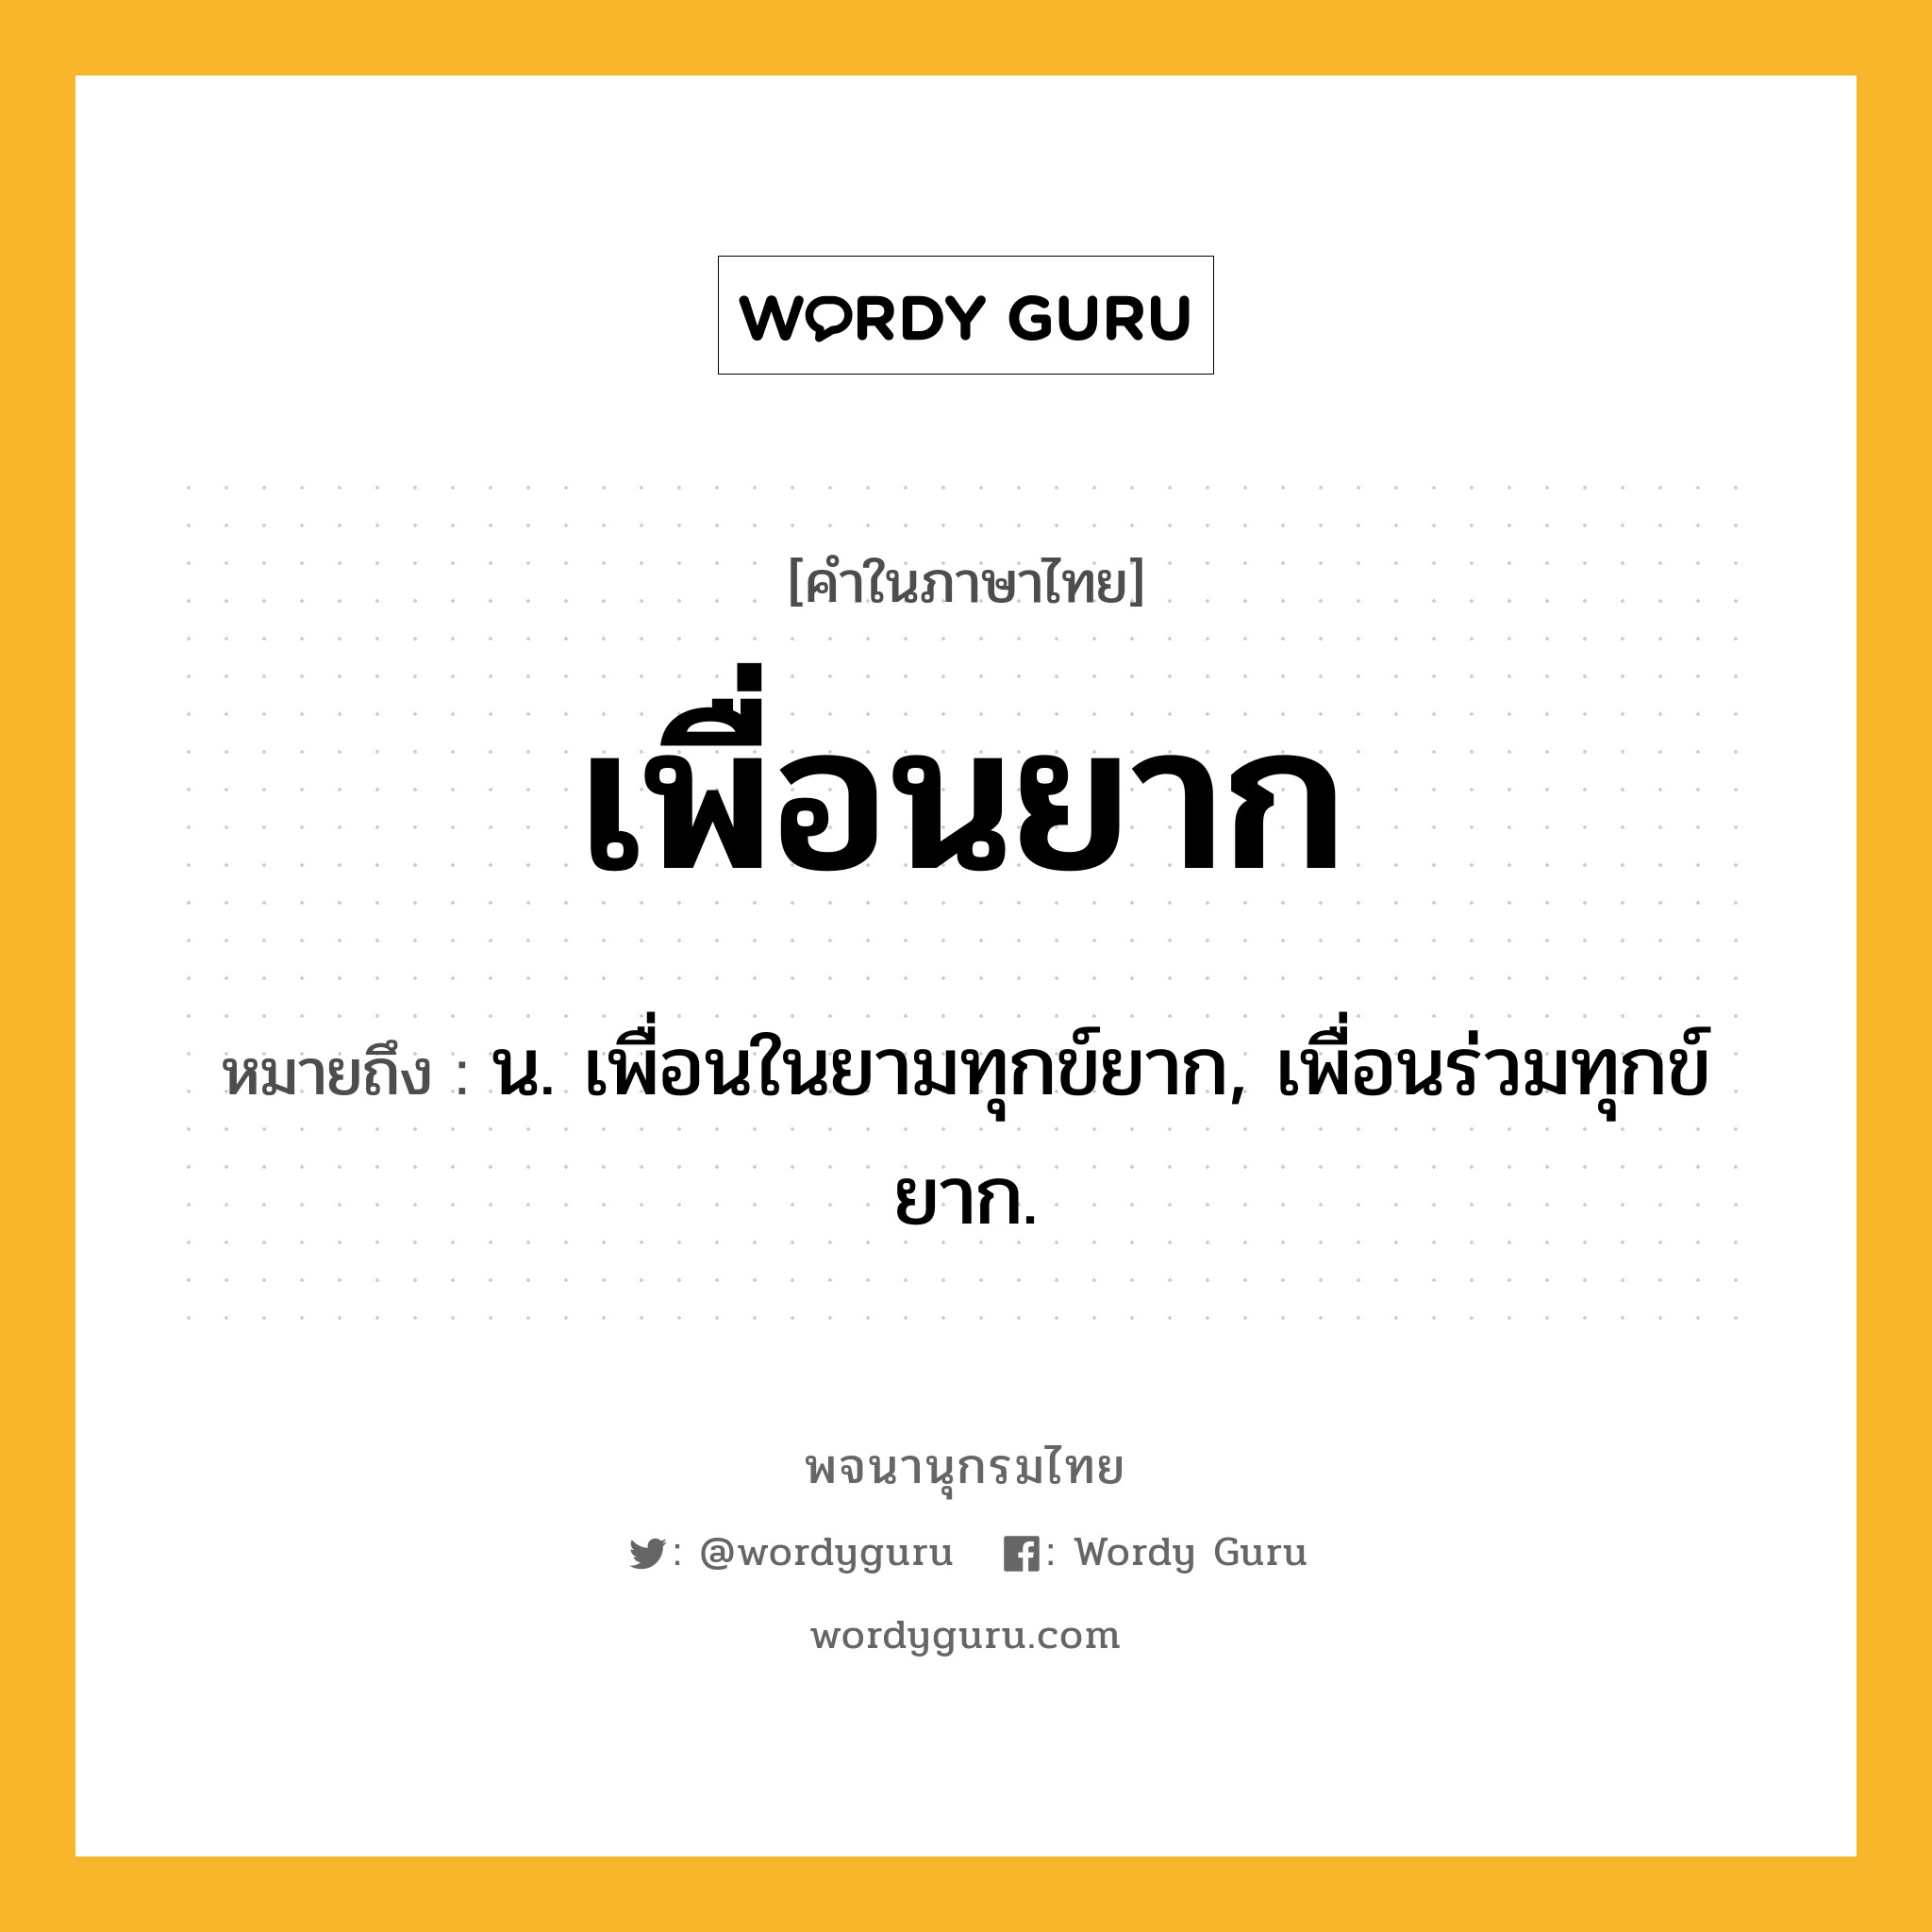 เพื่อนยาก ความหมาย หมายถึงอะไร?, คำในภาษาไทย เพื่อนยาก หมายถึง น. เพื่อนในยามทุกข์ยาก, เพื่อนร่วมทุกข์ยาก.